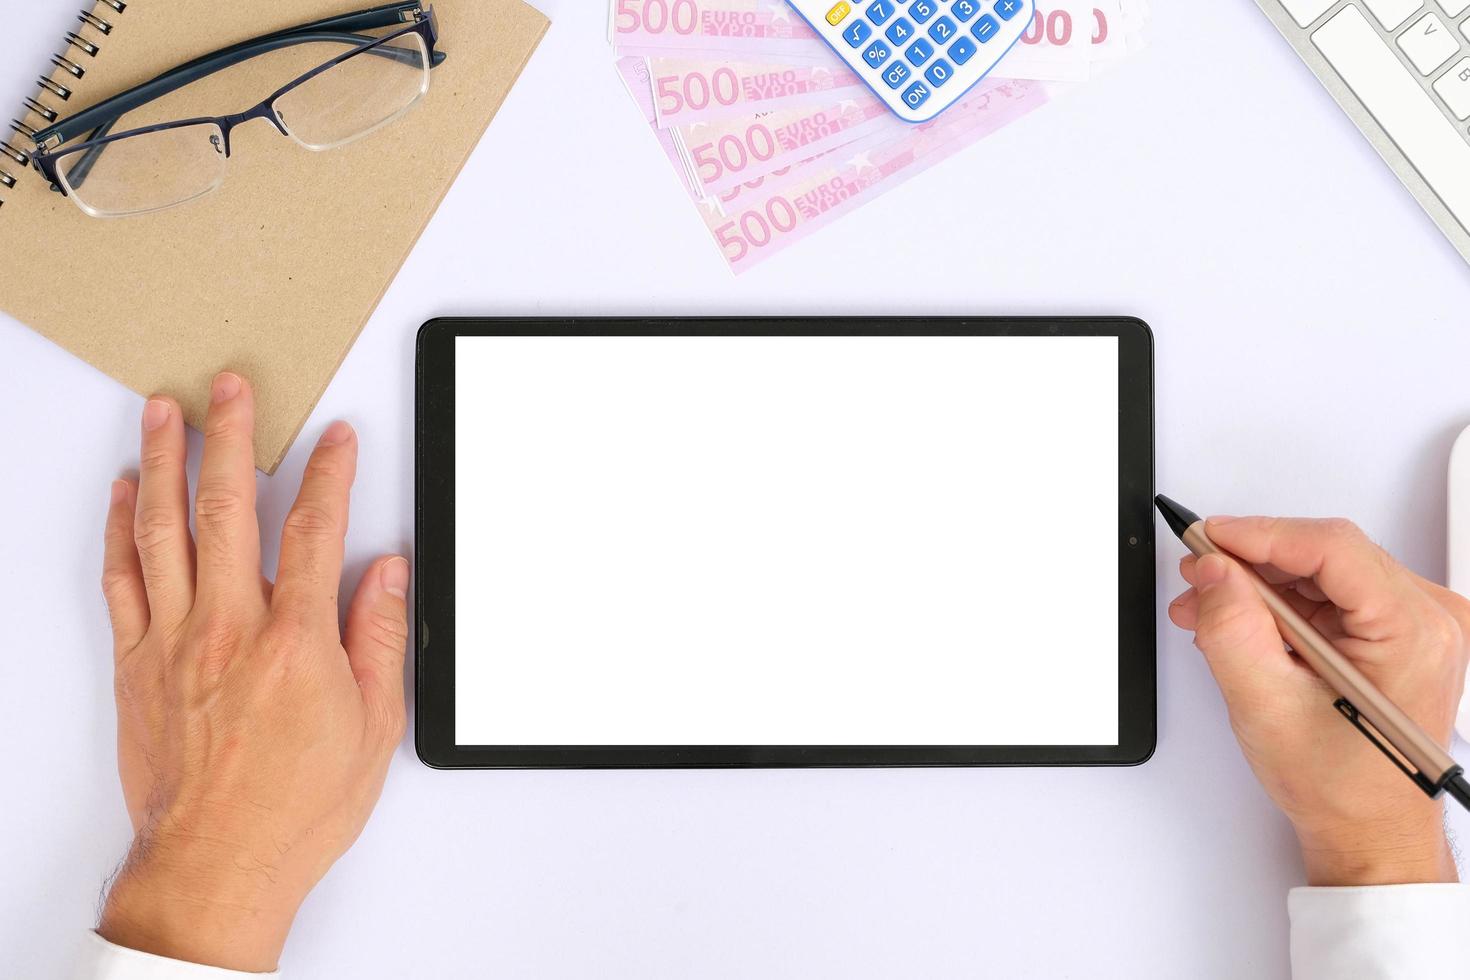 tela do tablet em branco enquanto digita em um teclado, bem como um modelo de tela para personalização adicional, podem ser usados para diversos fins. área para copiar foto